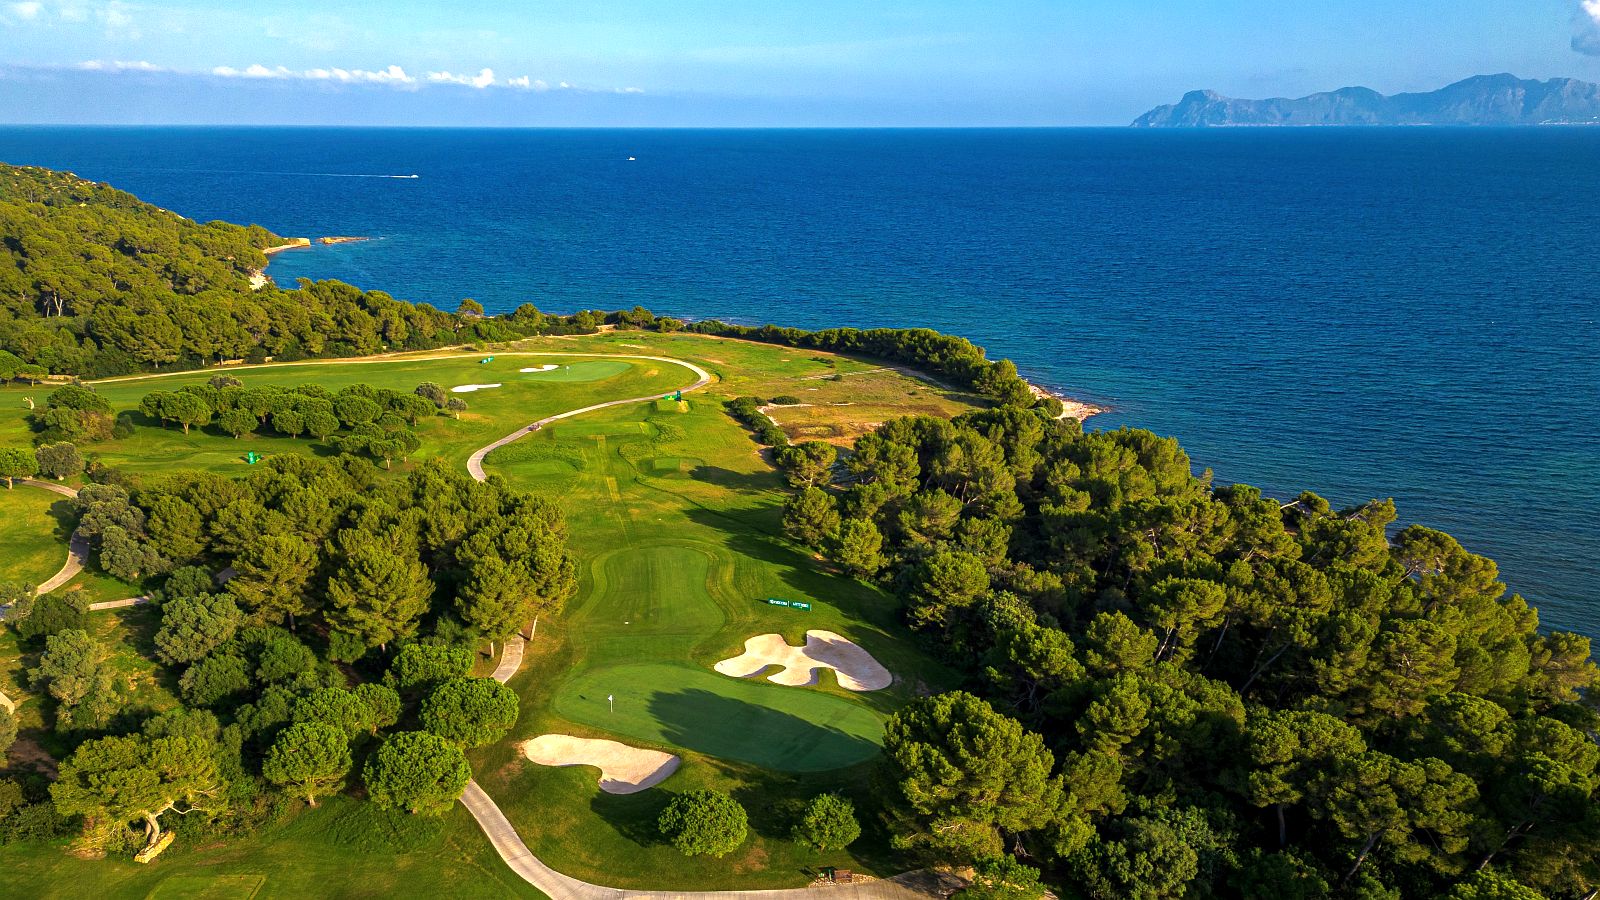 Hübscher Gastgeber: die Anlage des Club de Golf Alcanada aus der Luft.
© Aitor Alcalde/Getty Images